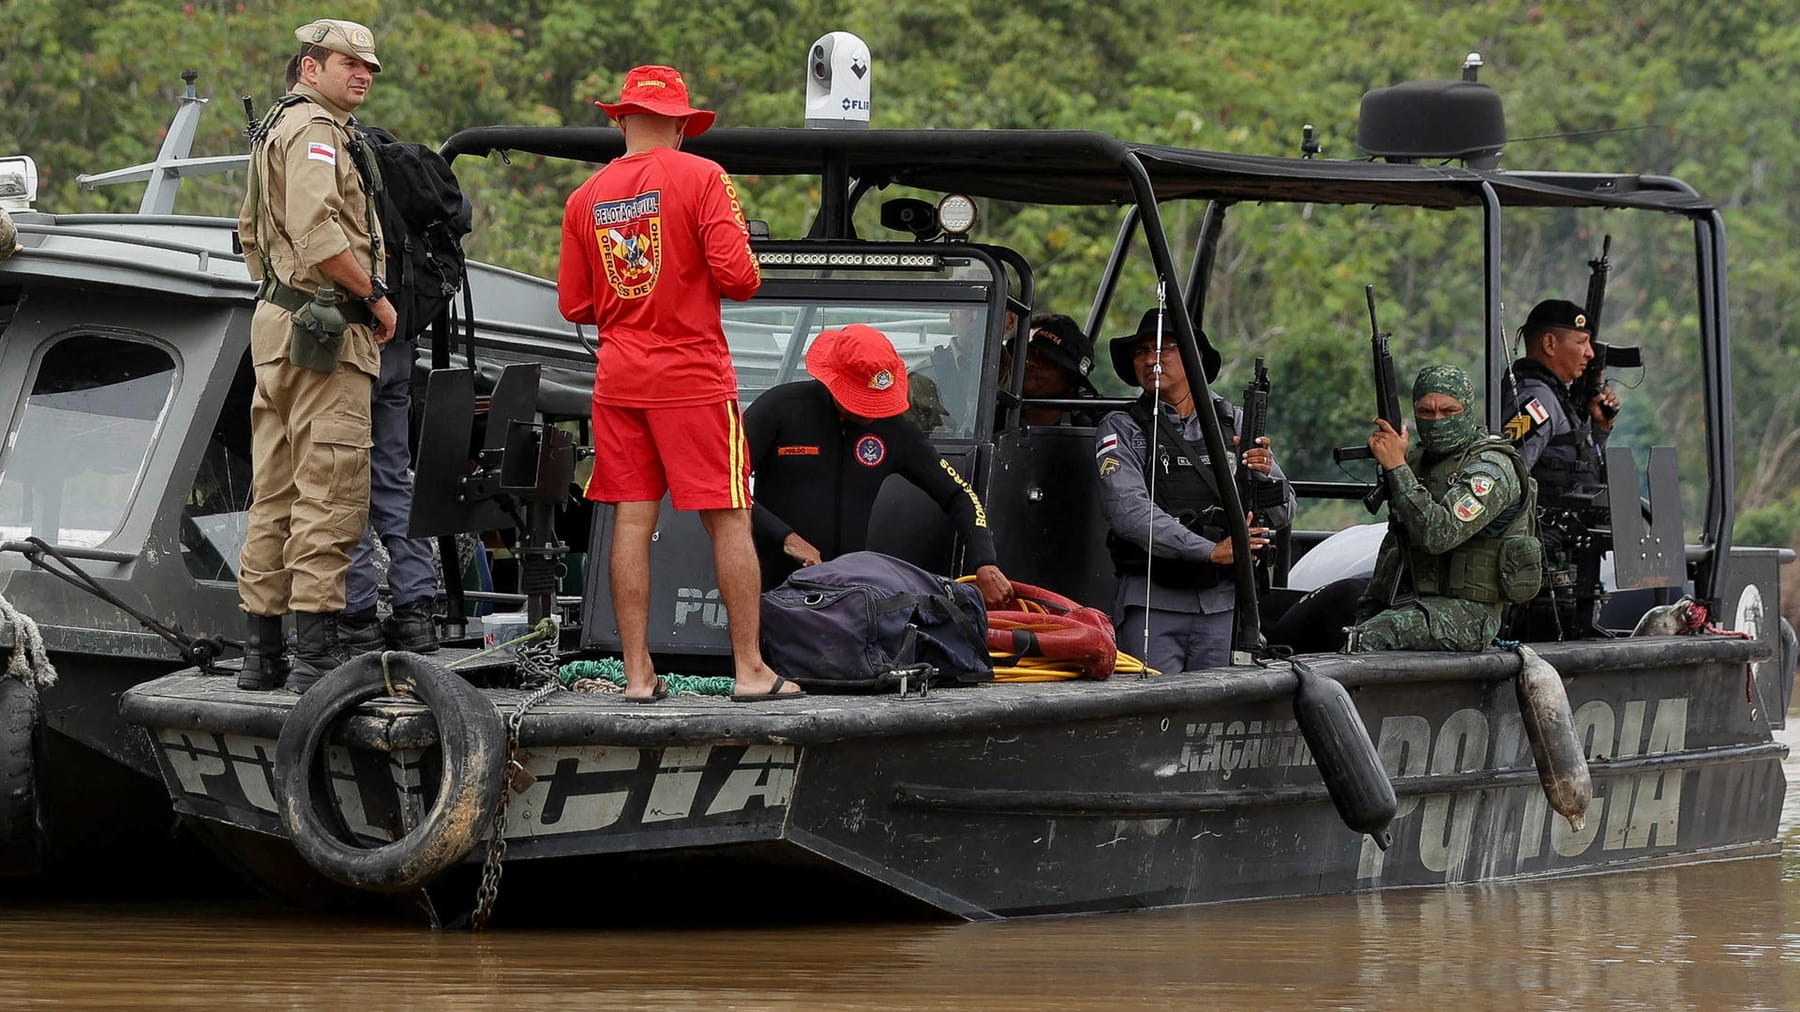 Het lot van de vermisten in de Amazone is onzeker